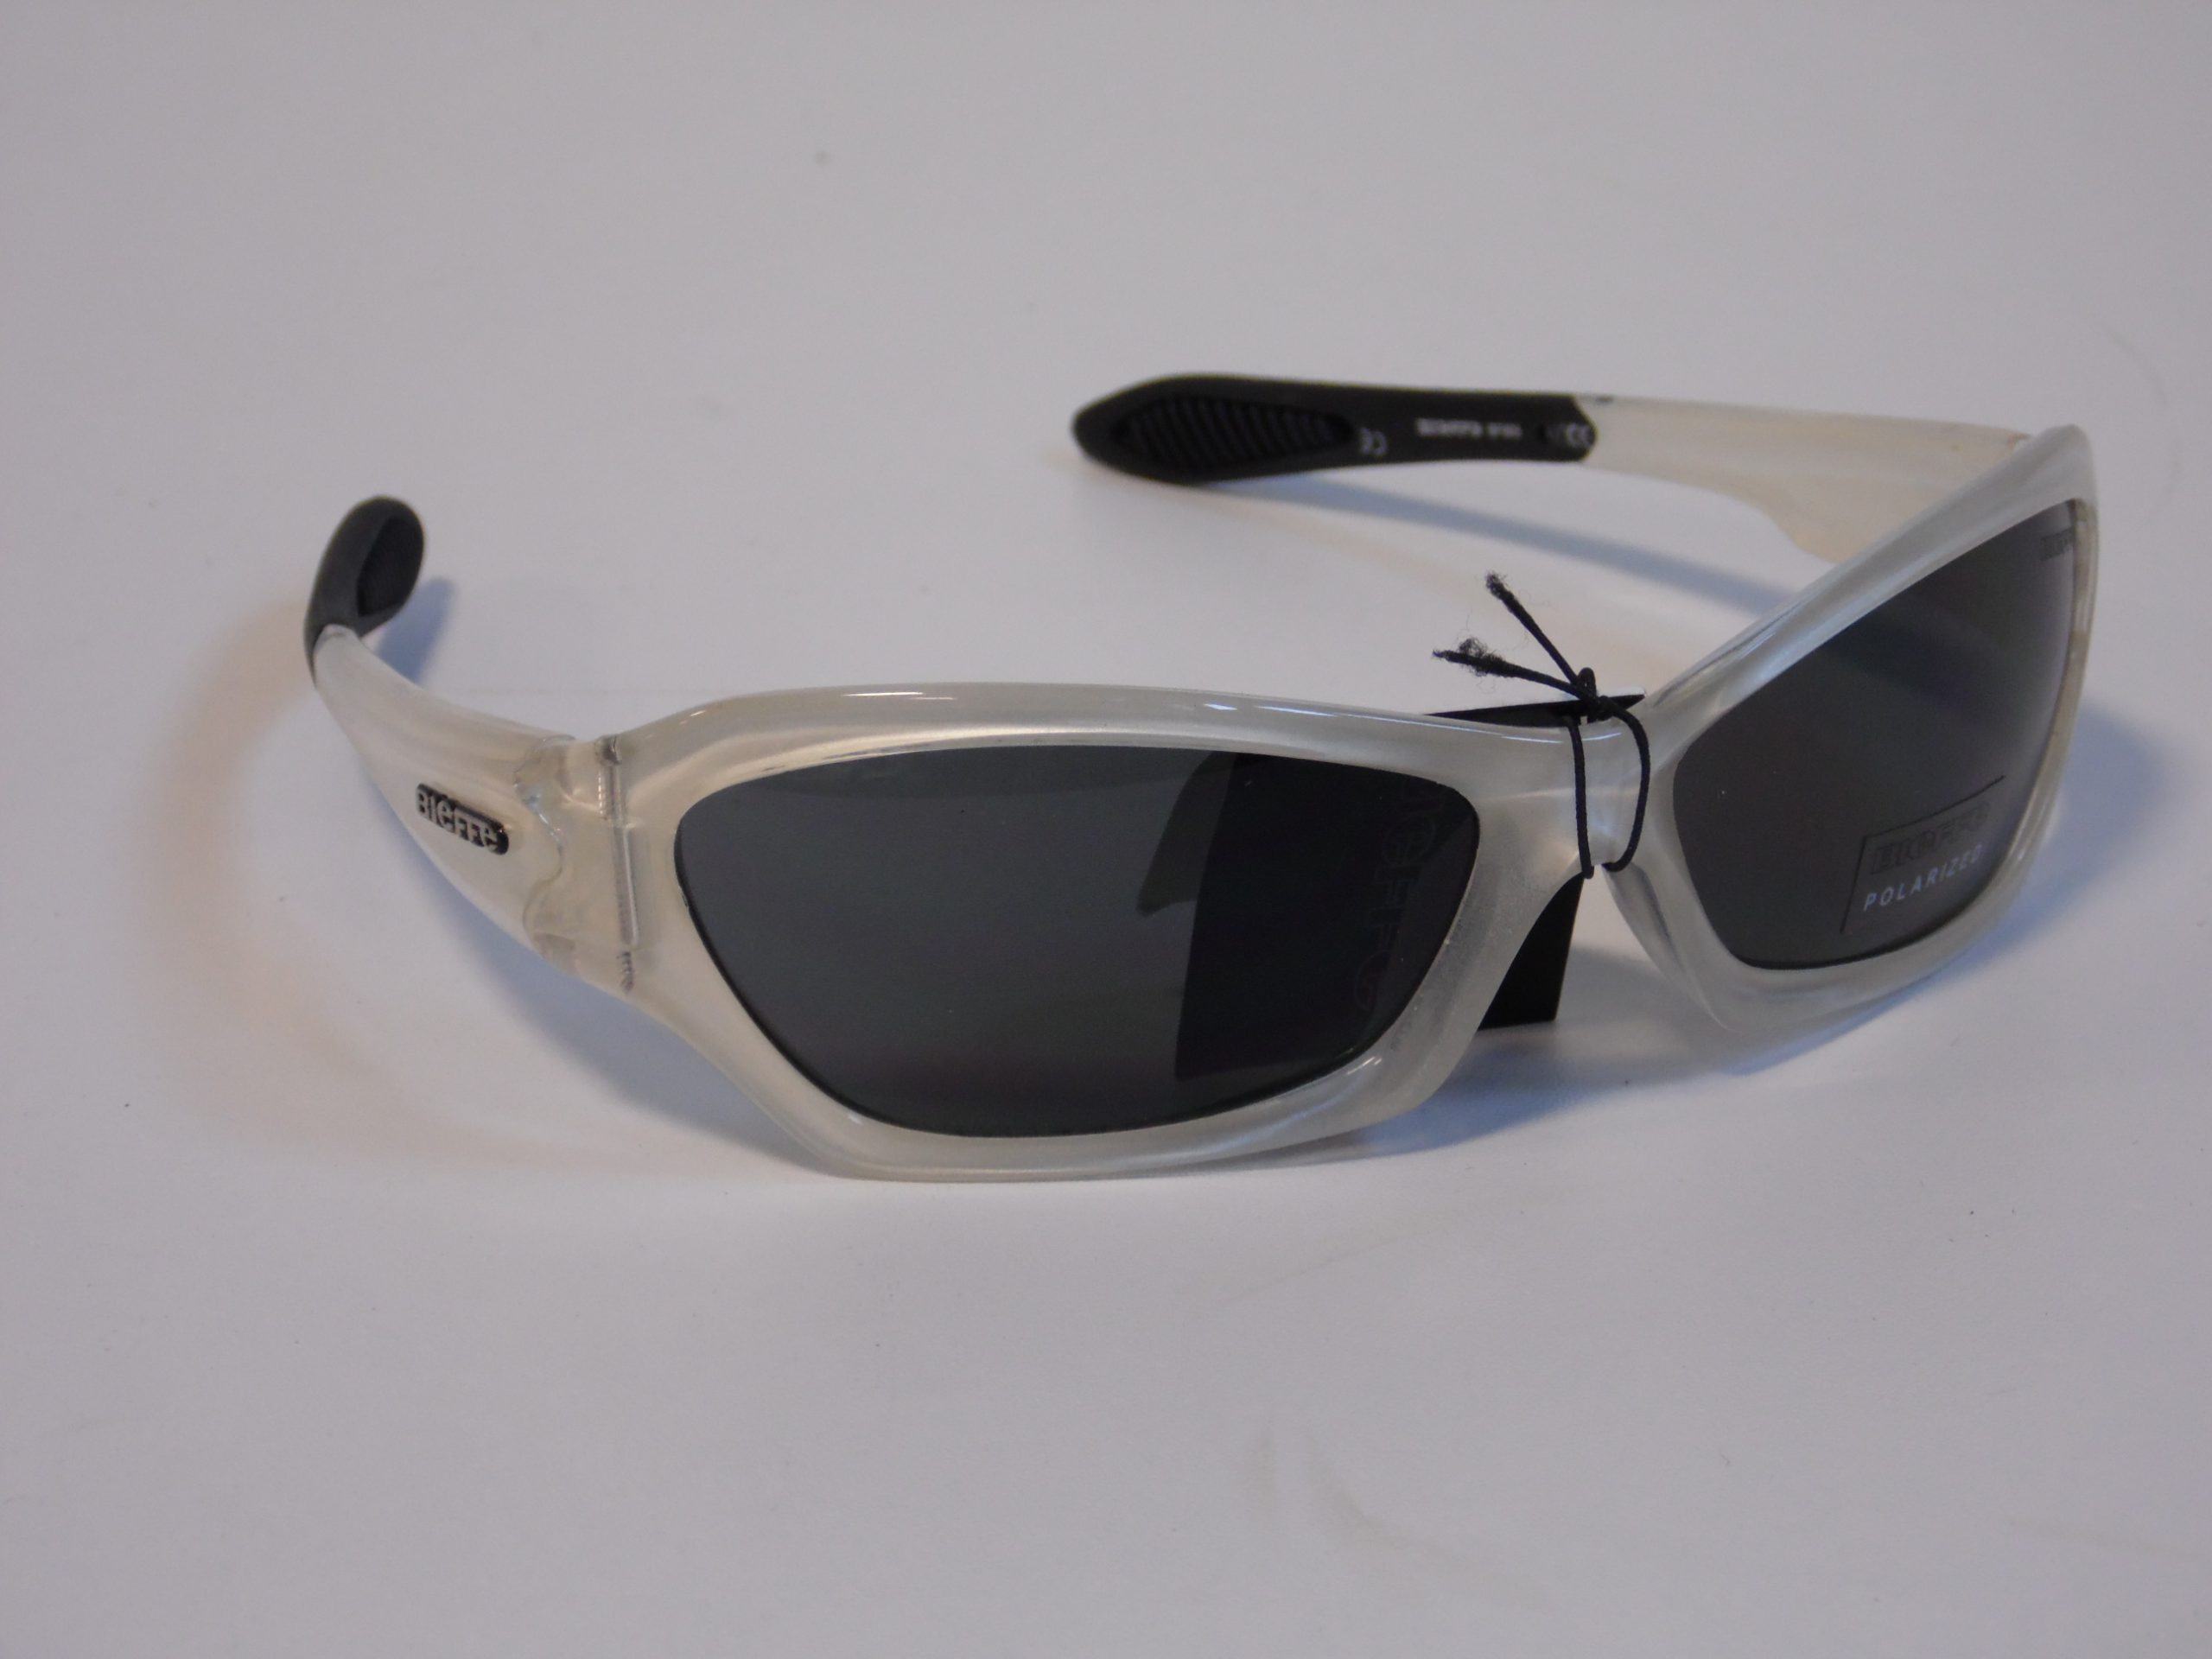 occhiali da sport bieffe equipment con lenti polarizzate e custodia taglia unica colo bianco opaco